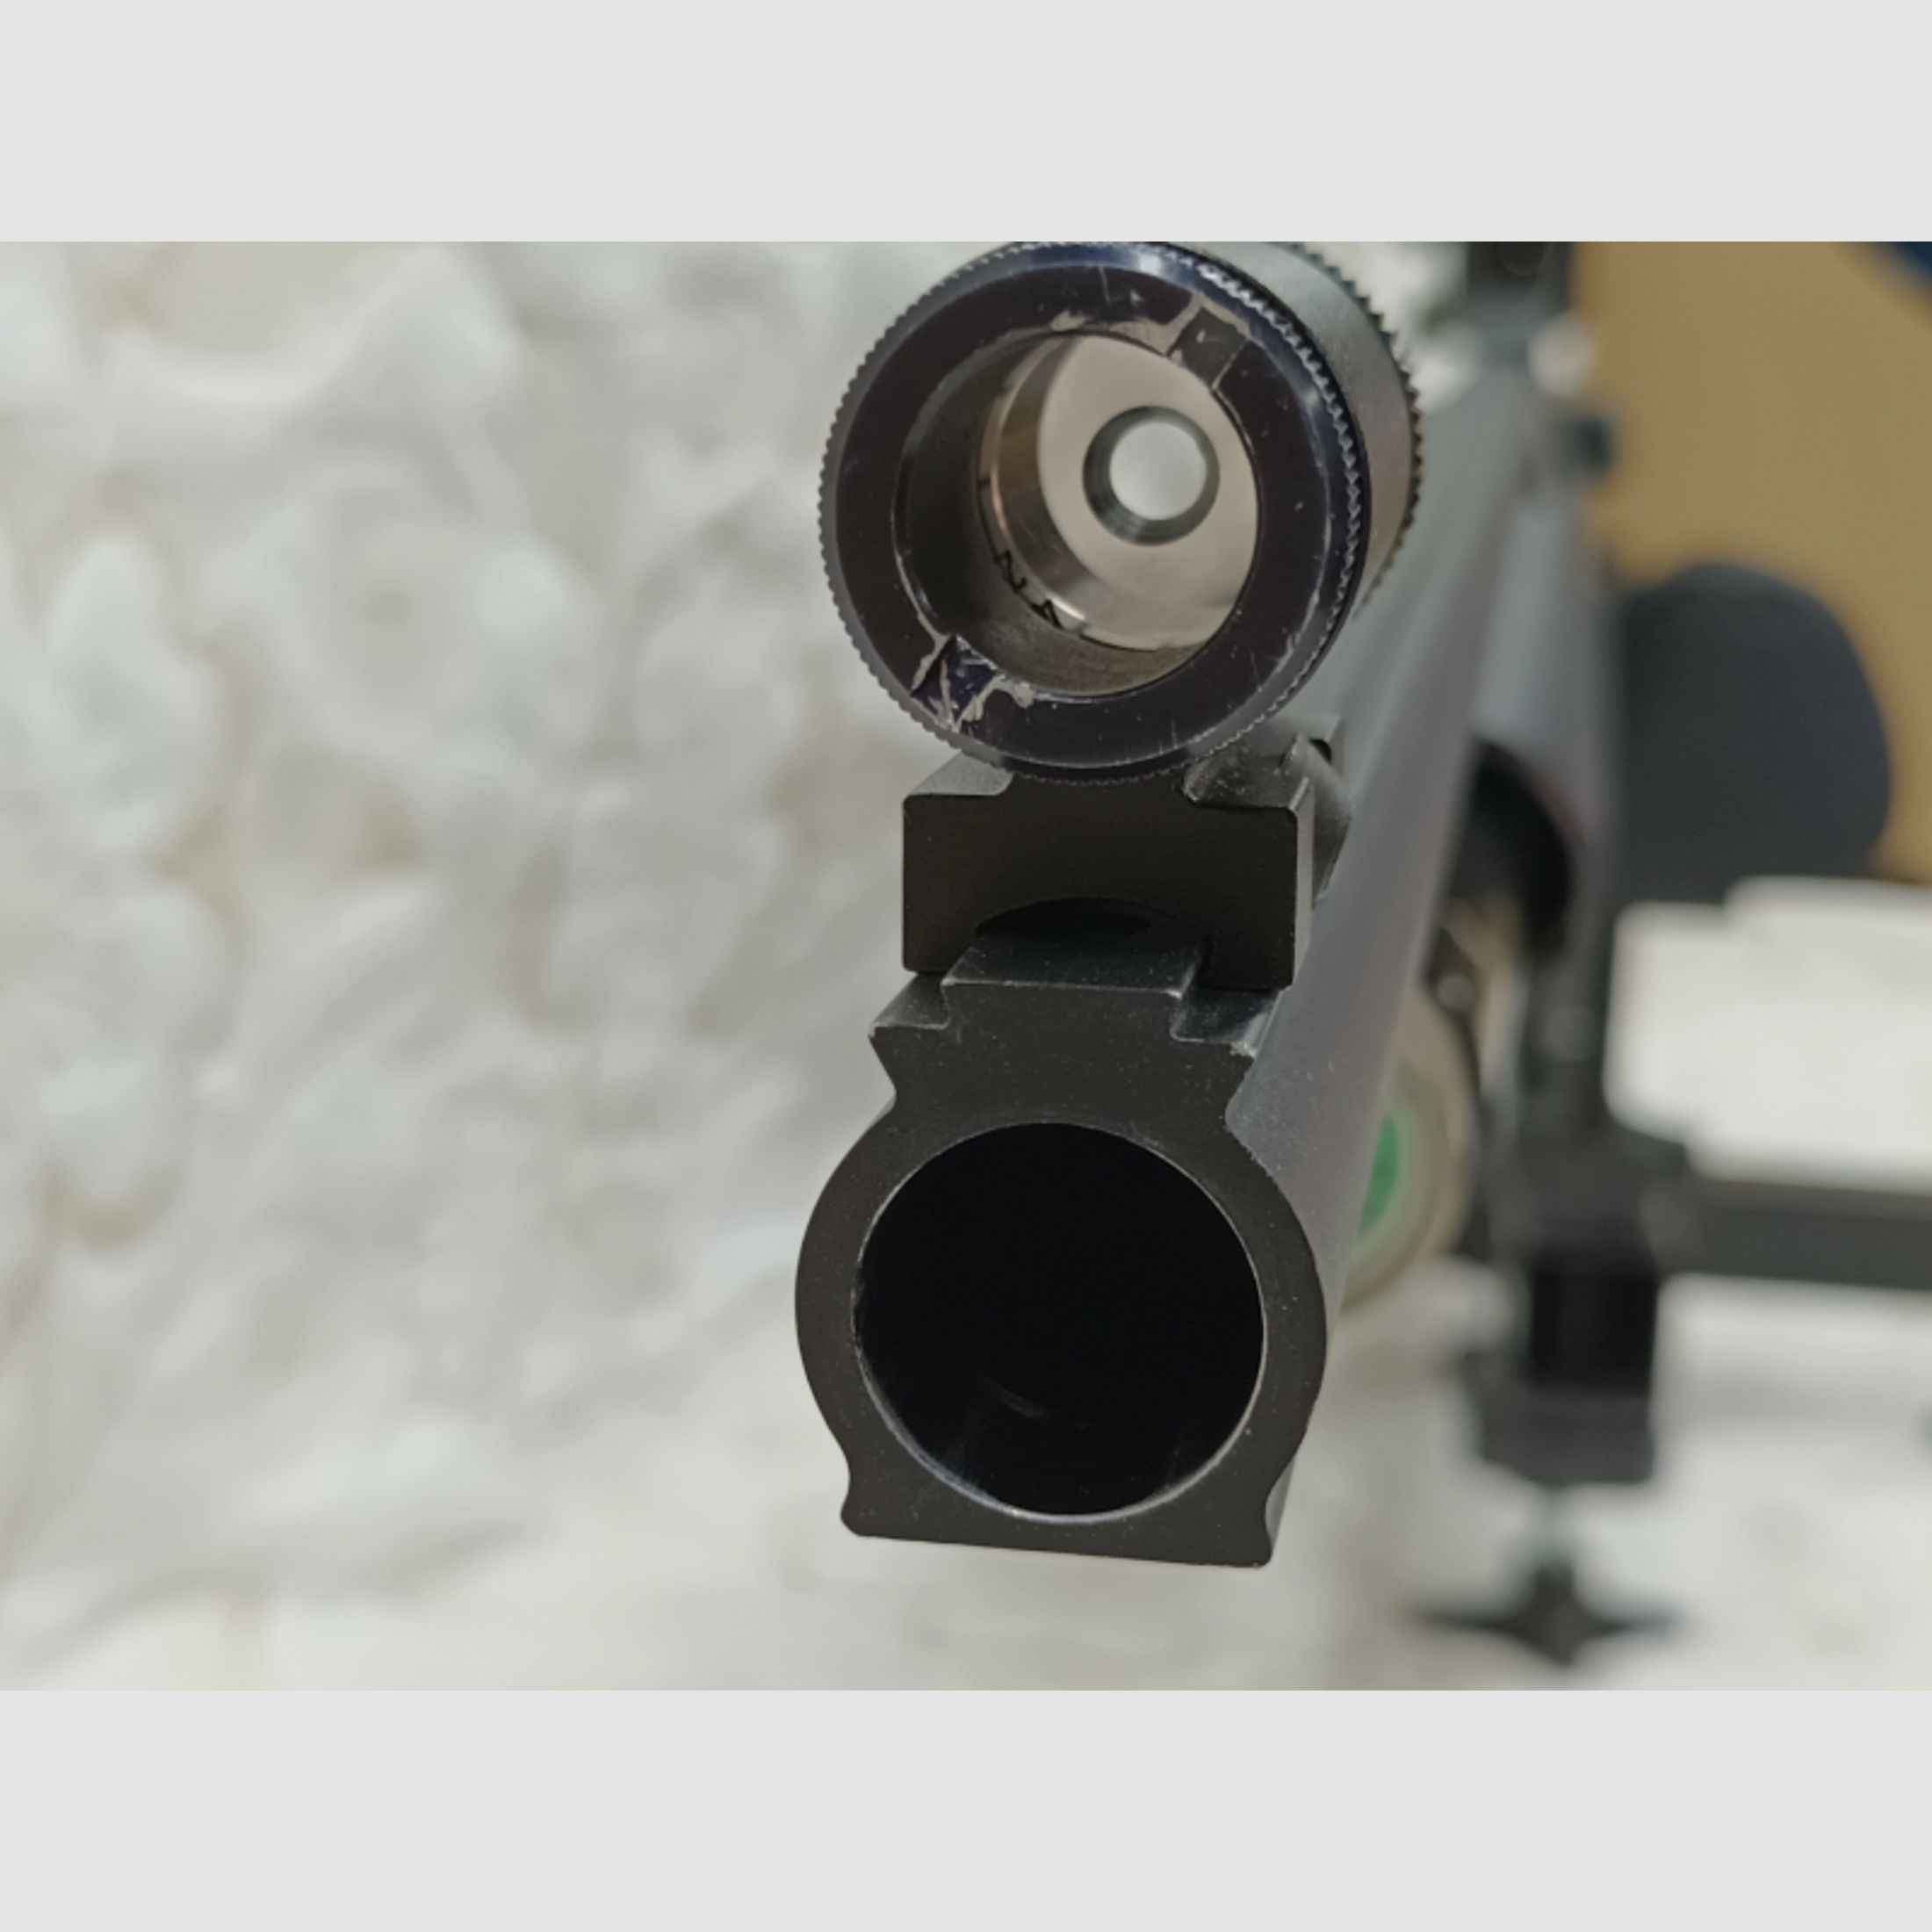 Hämmerli CR20 ,,BLACK EDITION,, Pressluft Gewehr Cal.4,5mm Matchgewehr Luftgewehr LG frisch Überholt